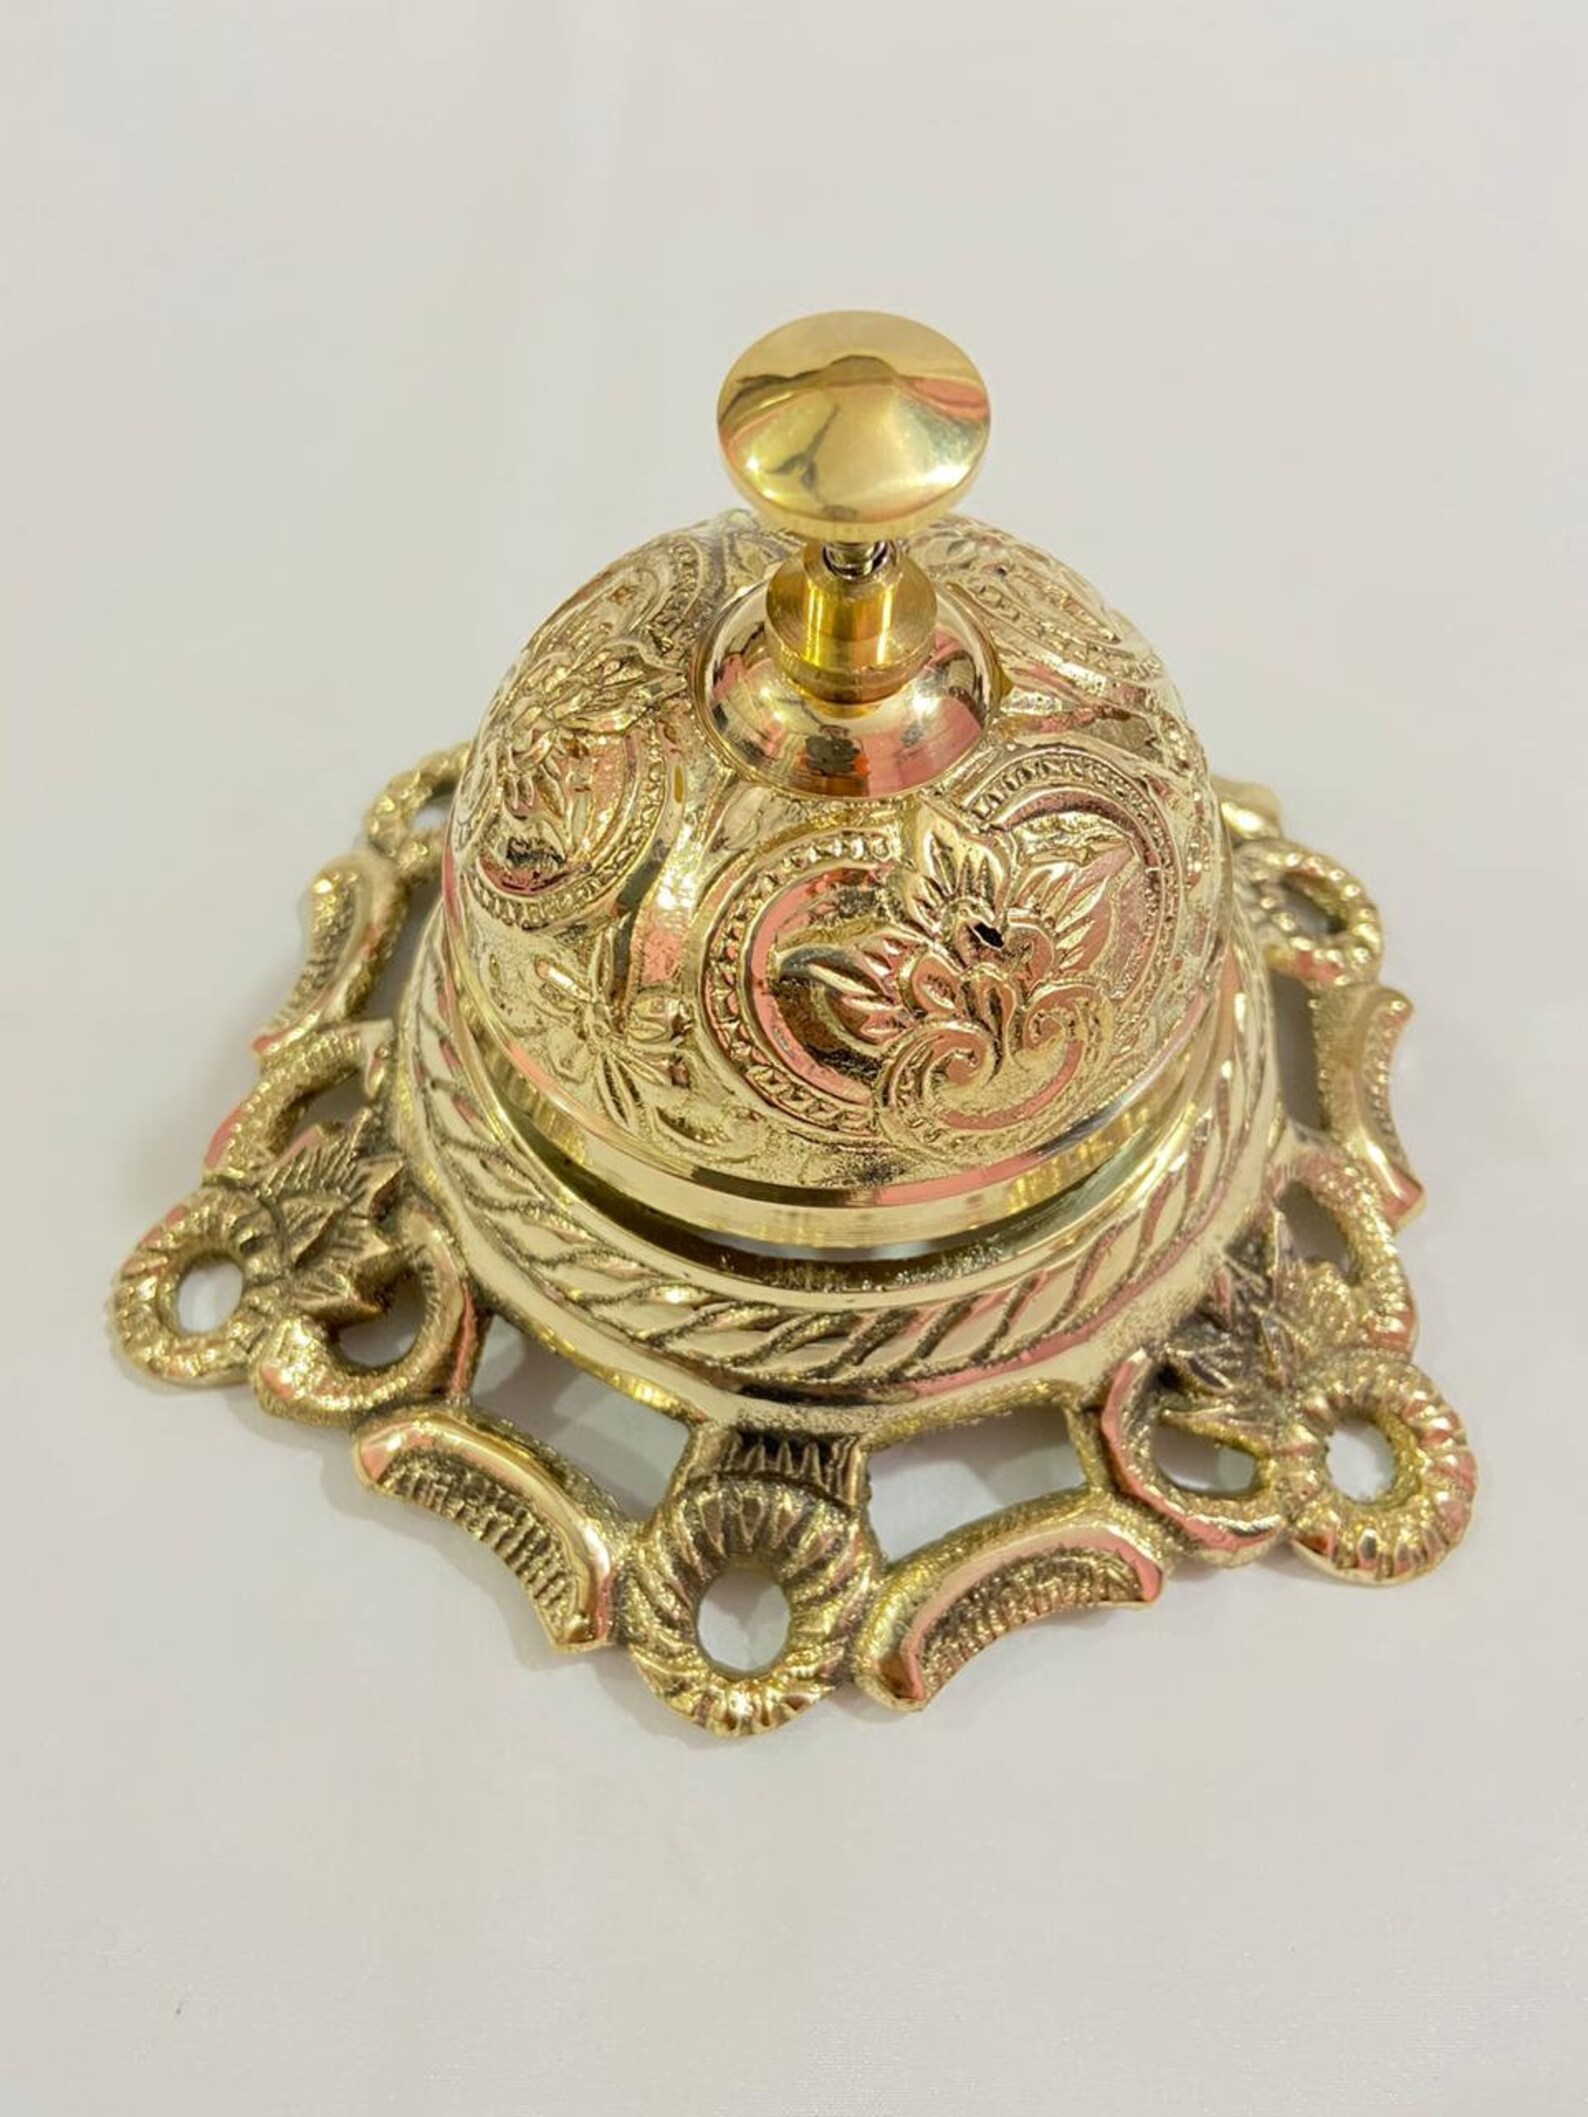 Solid Brass Ornate Hotel Front Desk Bell Vintage Service | Etsy